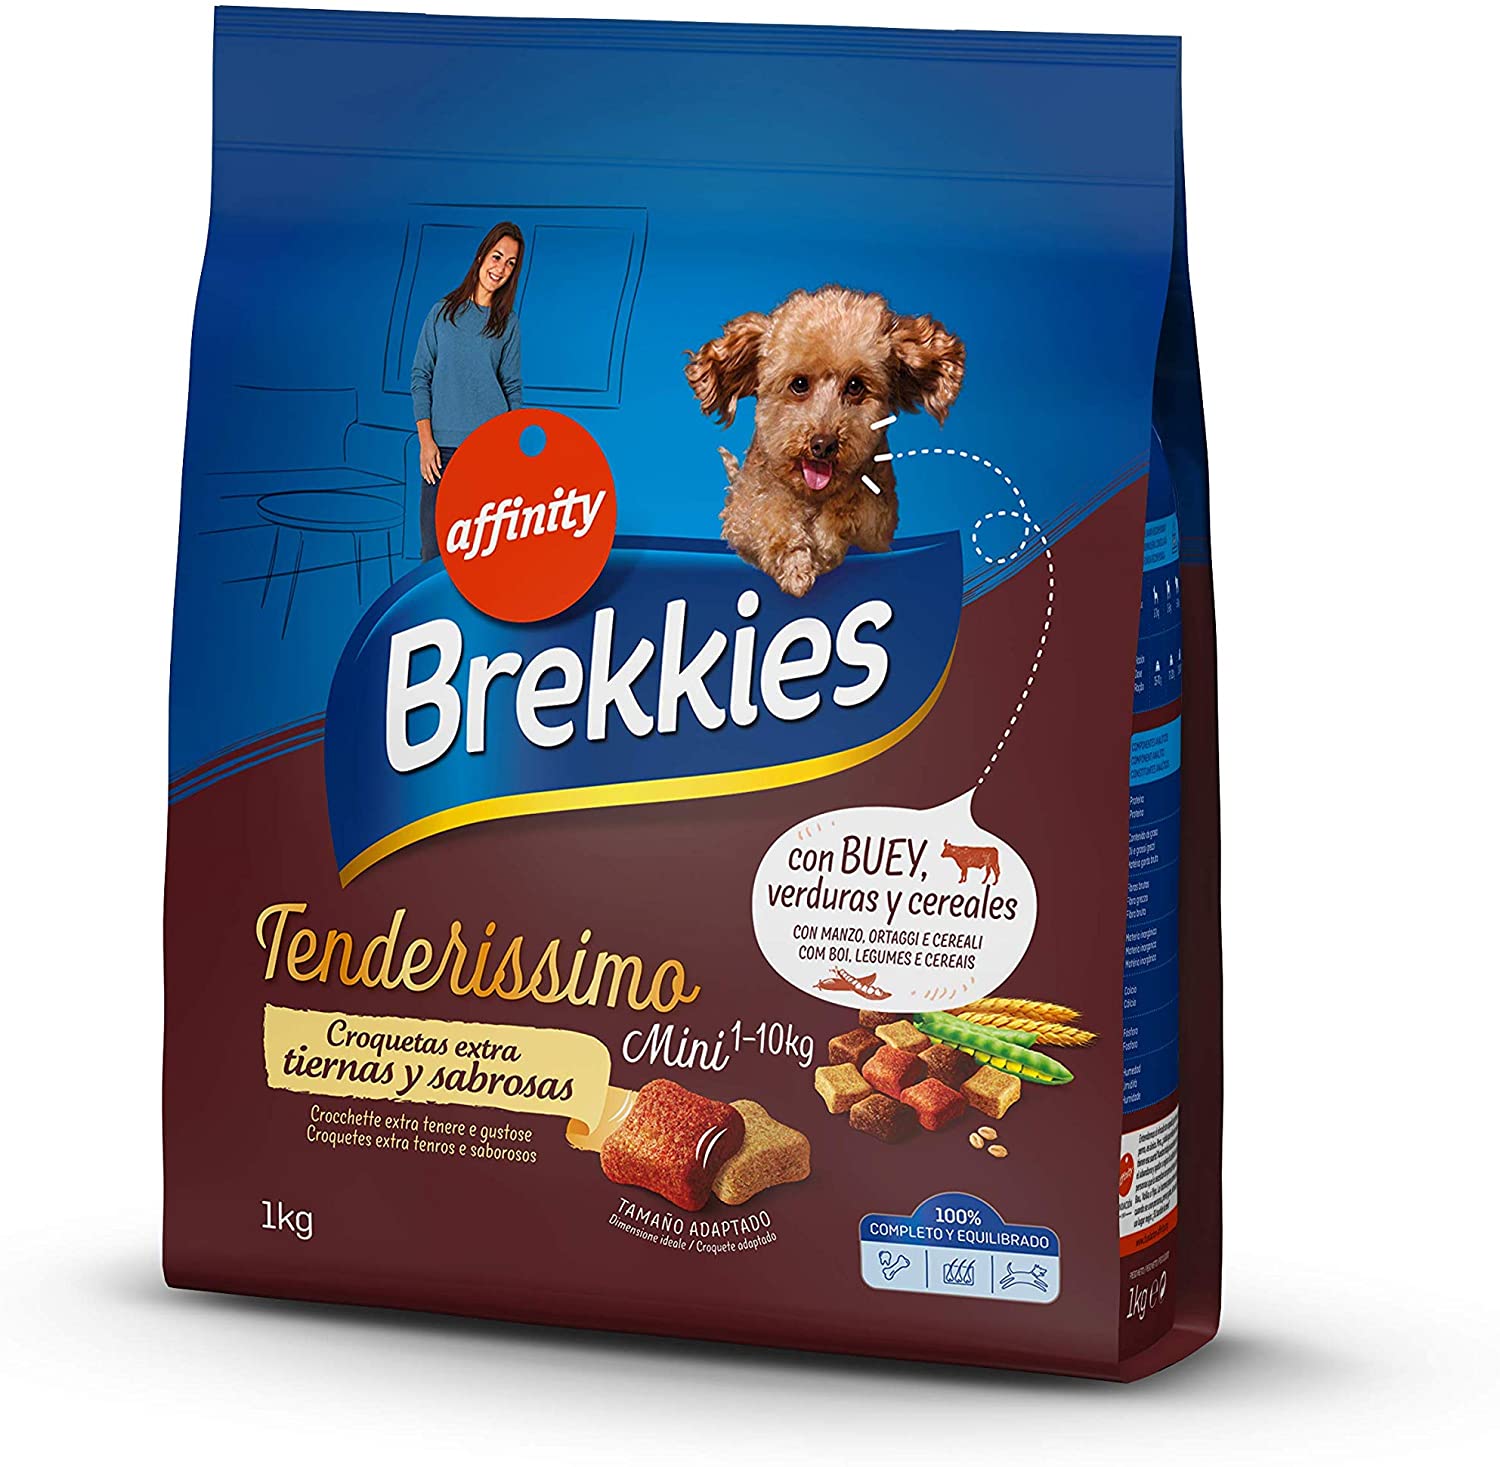  Brekkies Pienso Tenderissimo para Perros Mini con Buey, Verduras y Cereales - 1 kg 